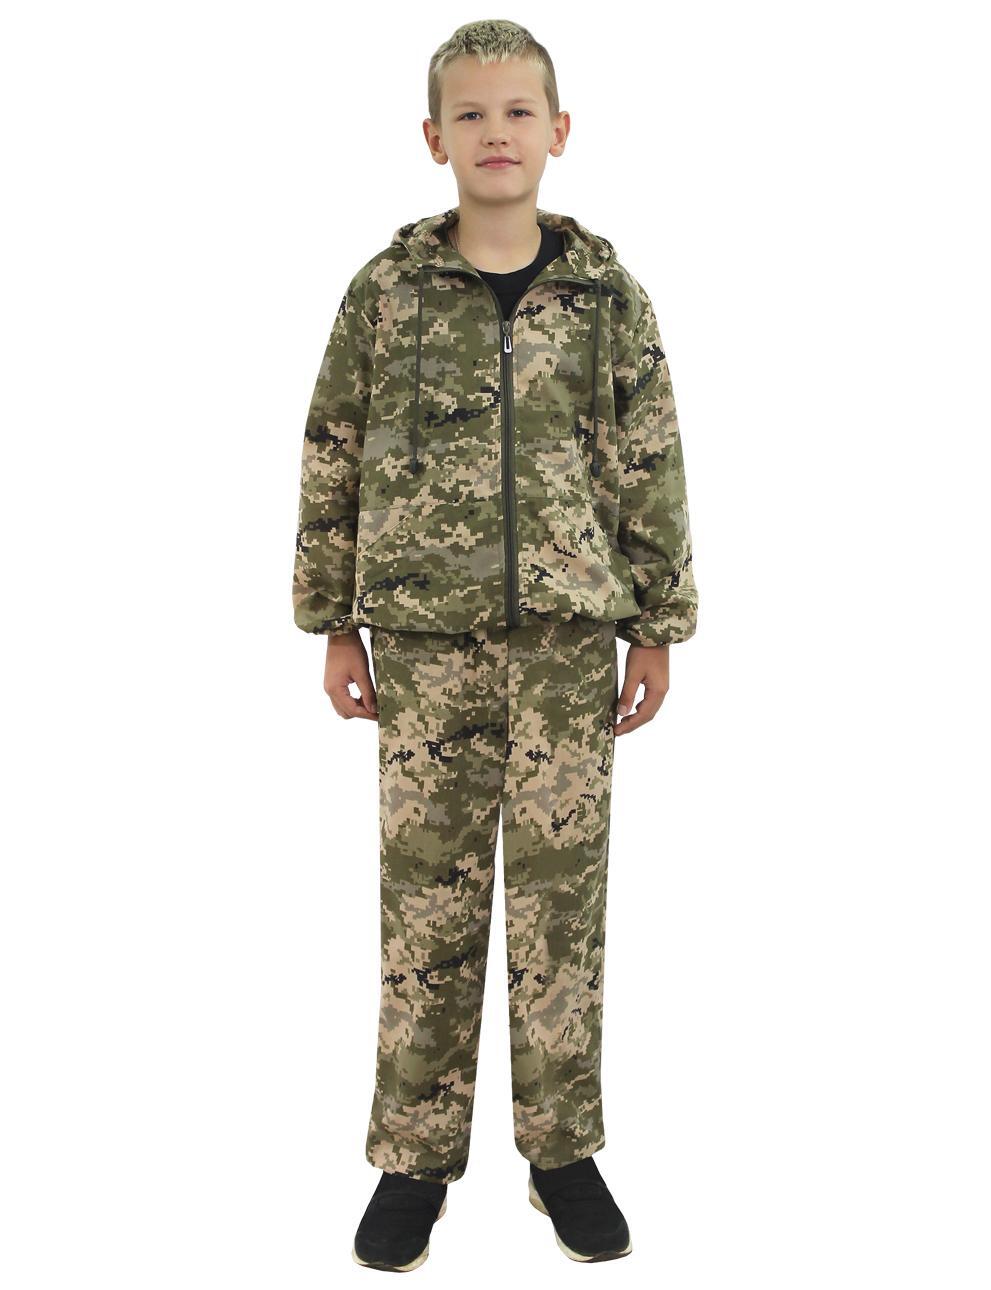 Цифра нато. Камуфляж цифра НАТО. Детский камуфляж. Детский камуфляжный костюм летний. Дети в камуфляже.